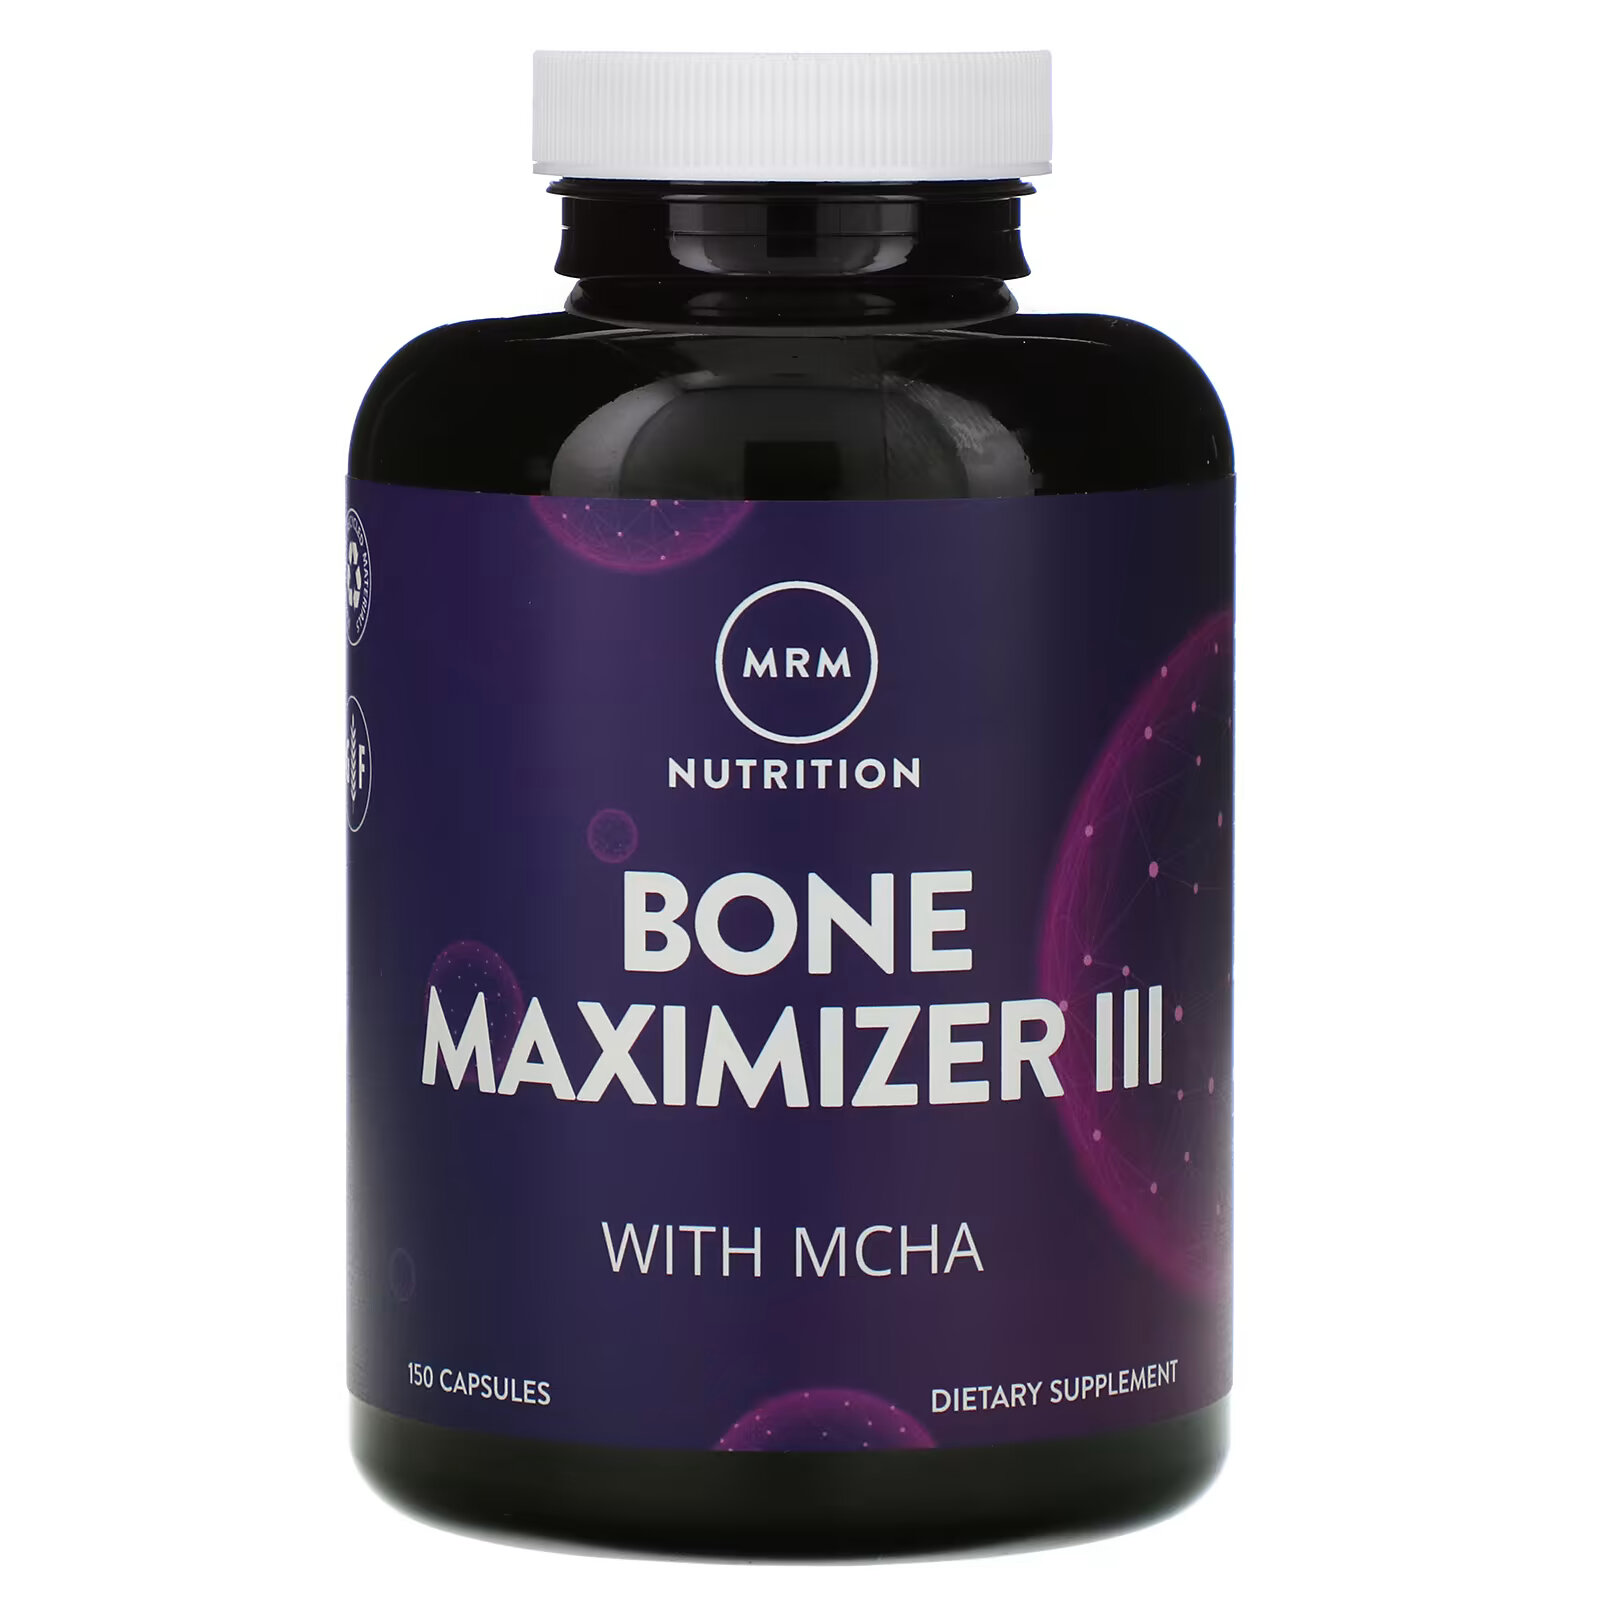 MRM Nutrition, Nutrition, Bone Maximizer III с МКГА, 150 капсул mrm nutrition nutrition bone maximizer iii с мкга 150 капсул